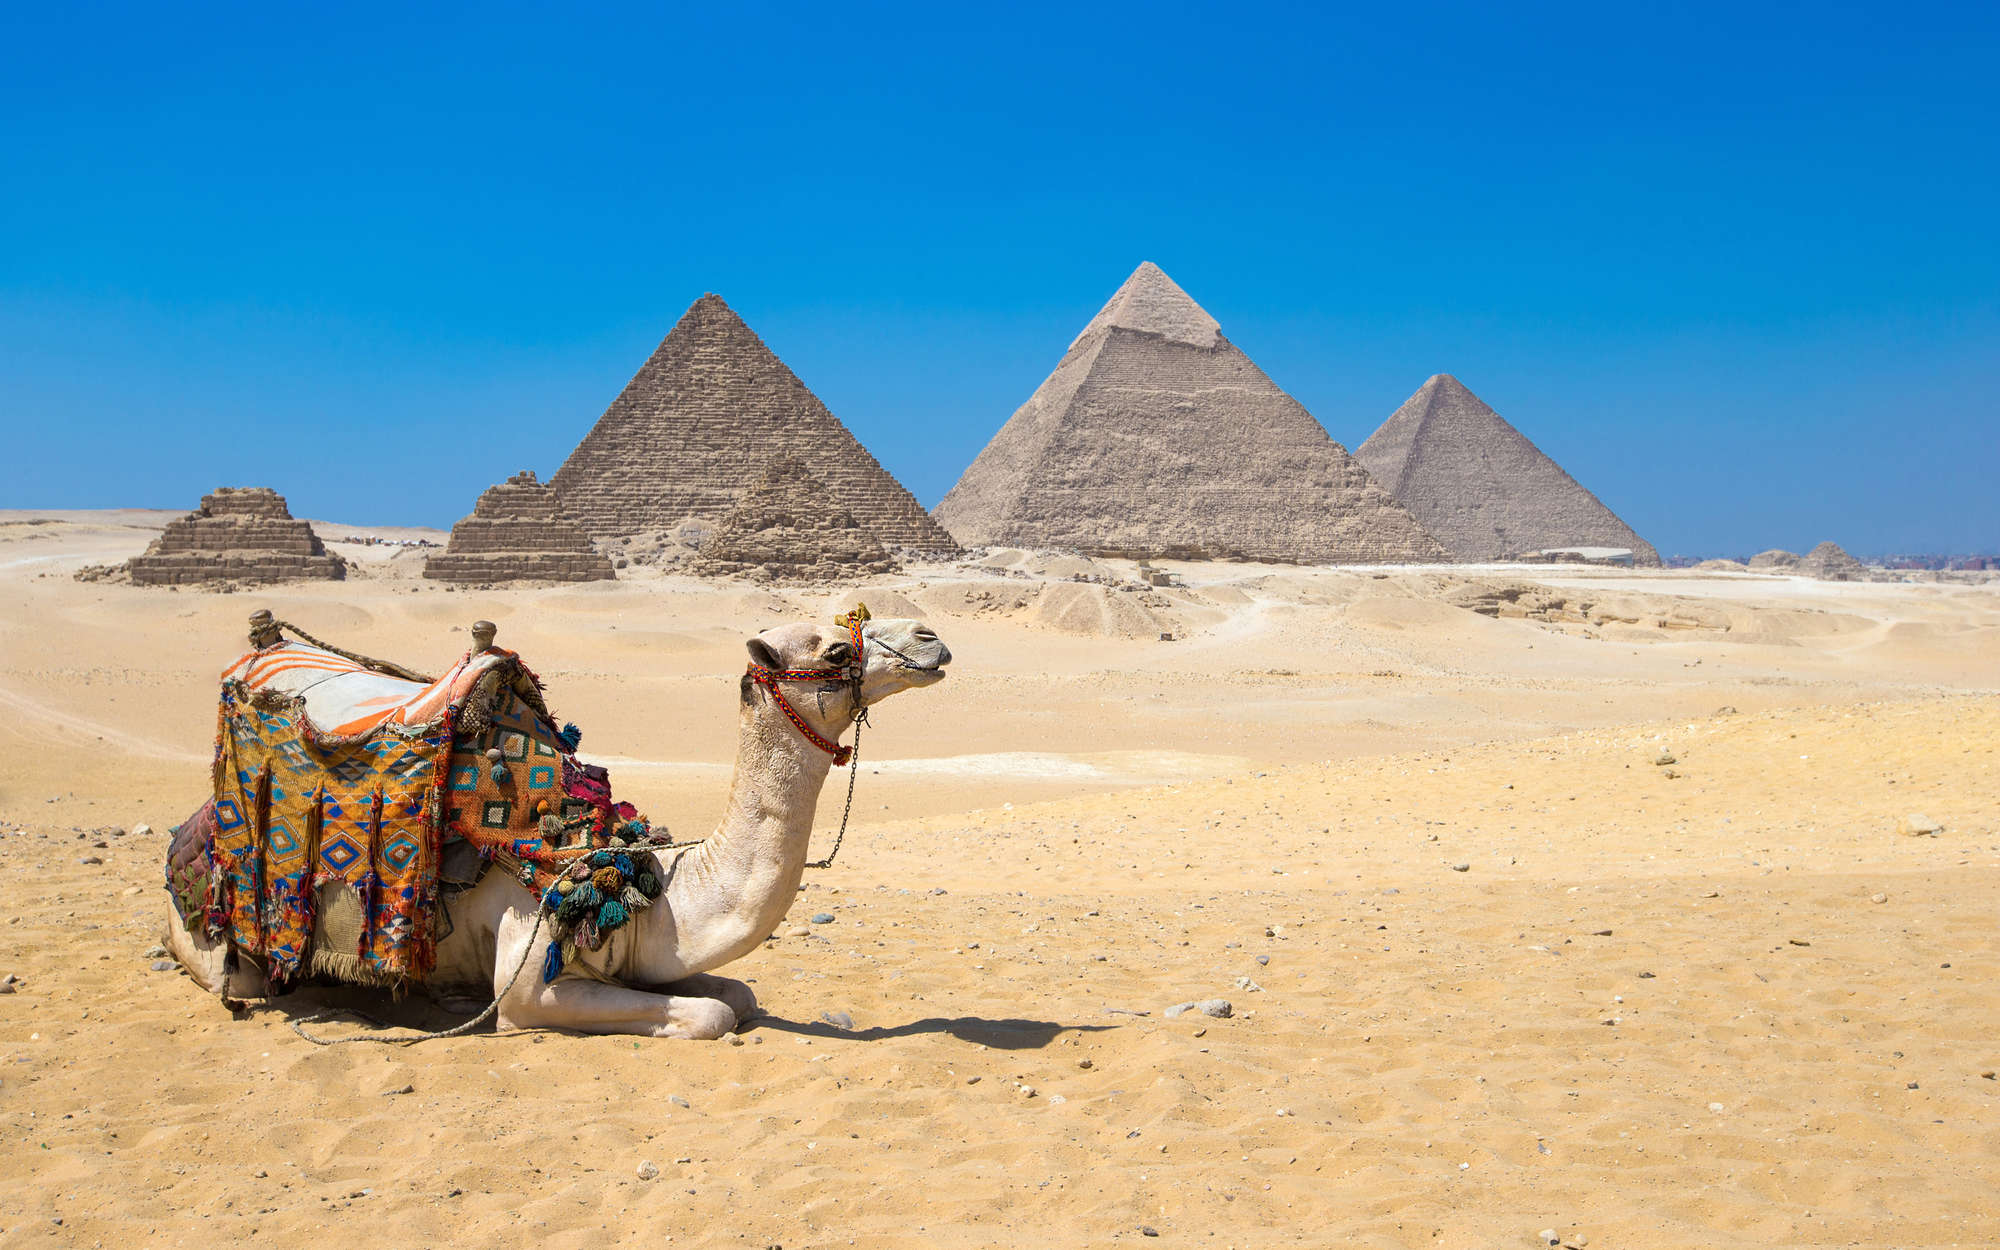             Digital behang Piramides van Gizeh met kameel - parelmoer glad vlies
        